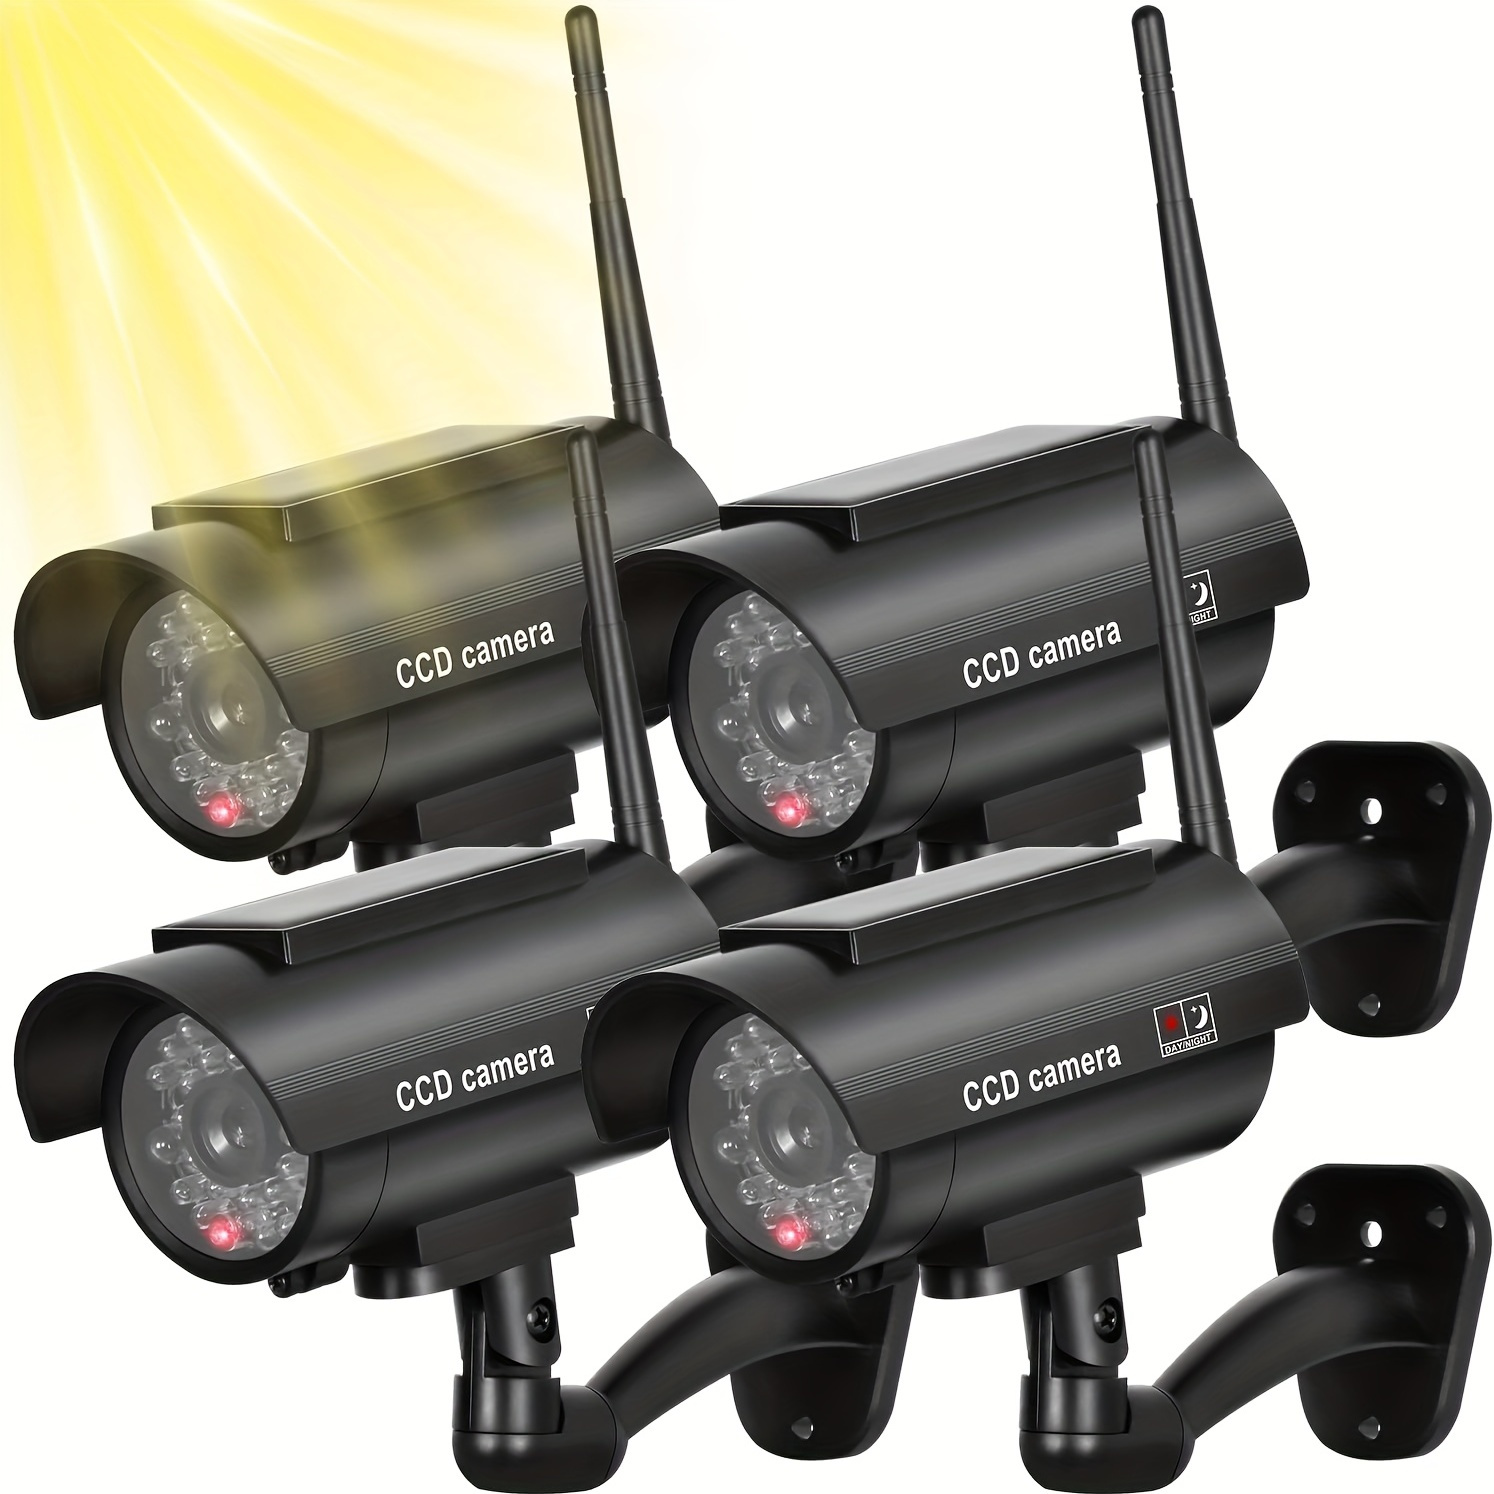 Sistema de vigilancia con Cámaras de seguridad CCTV - Antiun